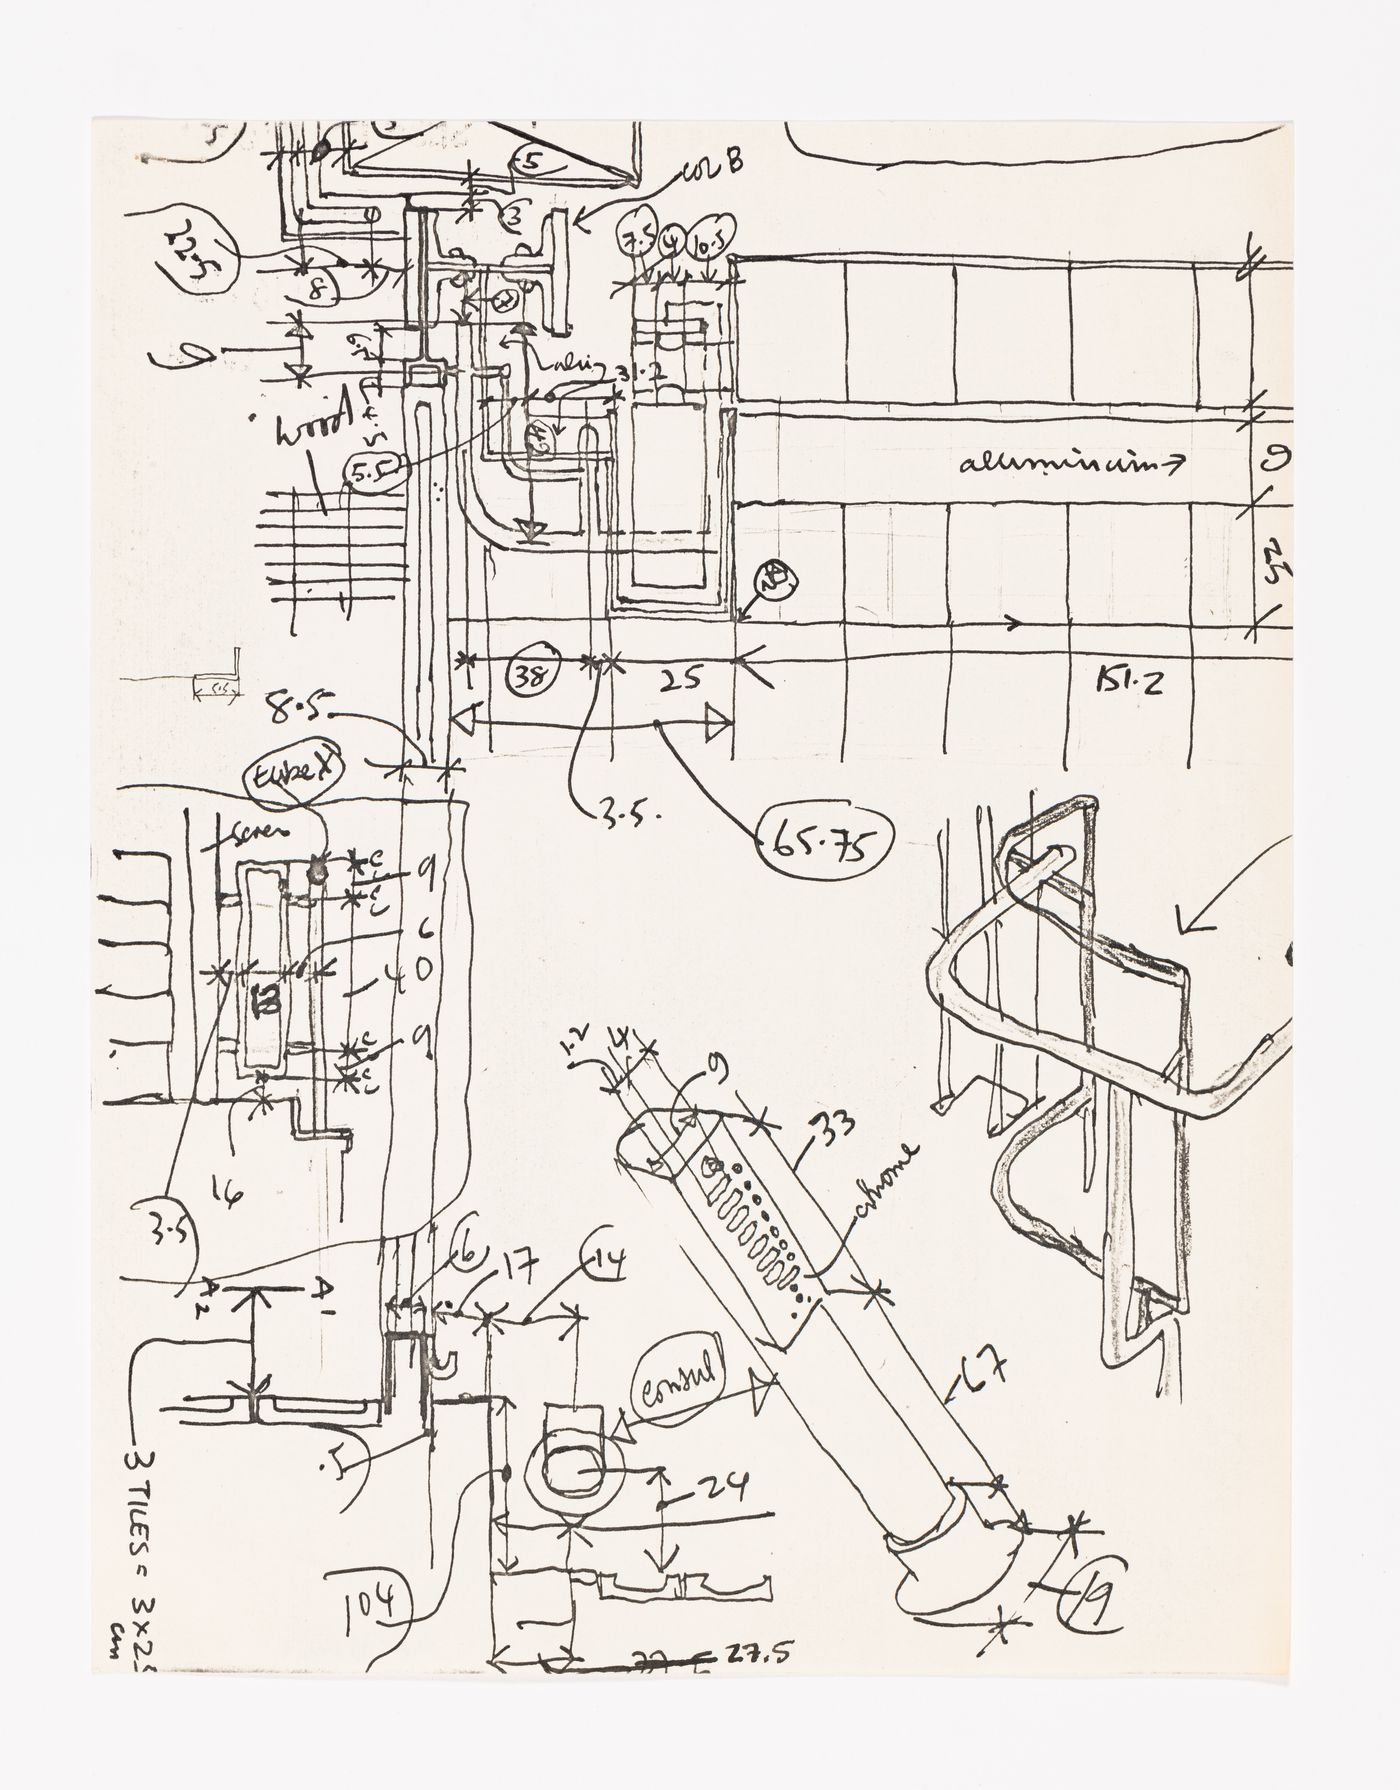 Measurement sketch of the Maison de Verre handrail and details, Maison de Verre, Paris, France